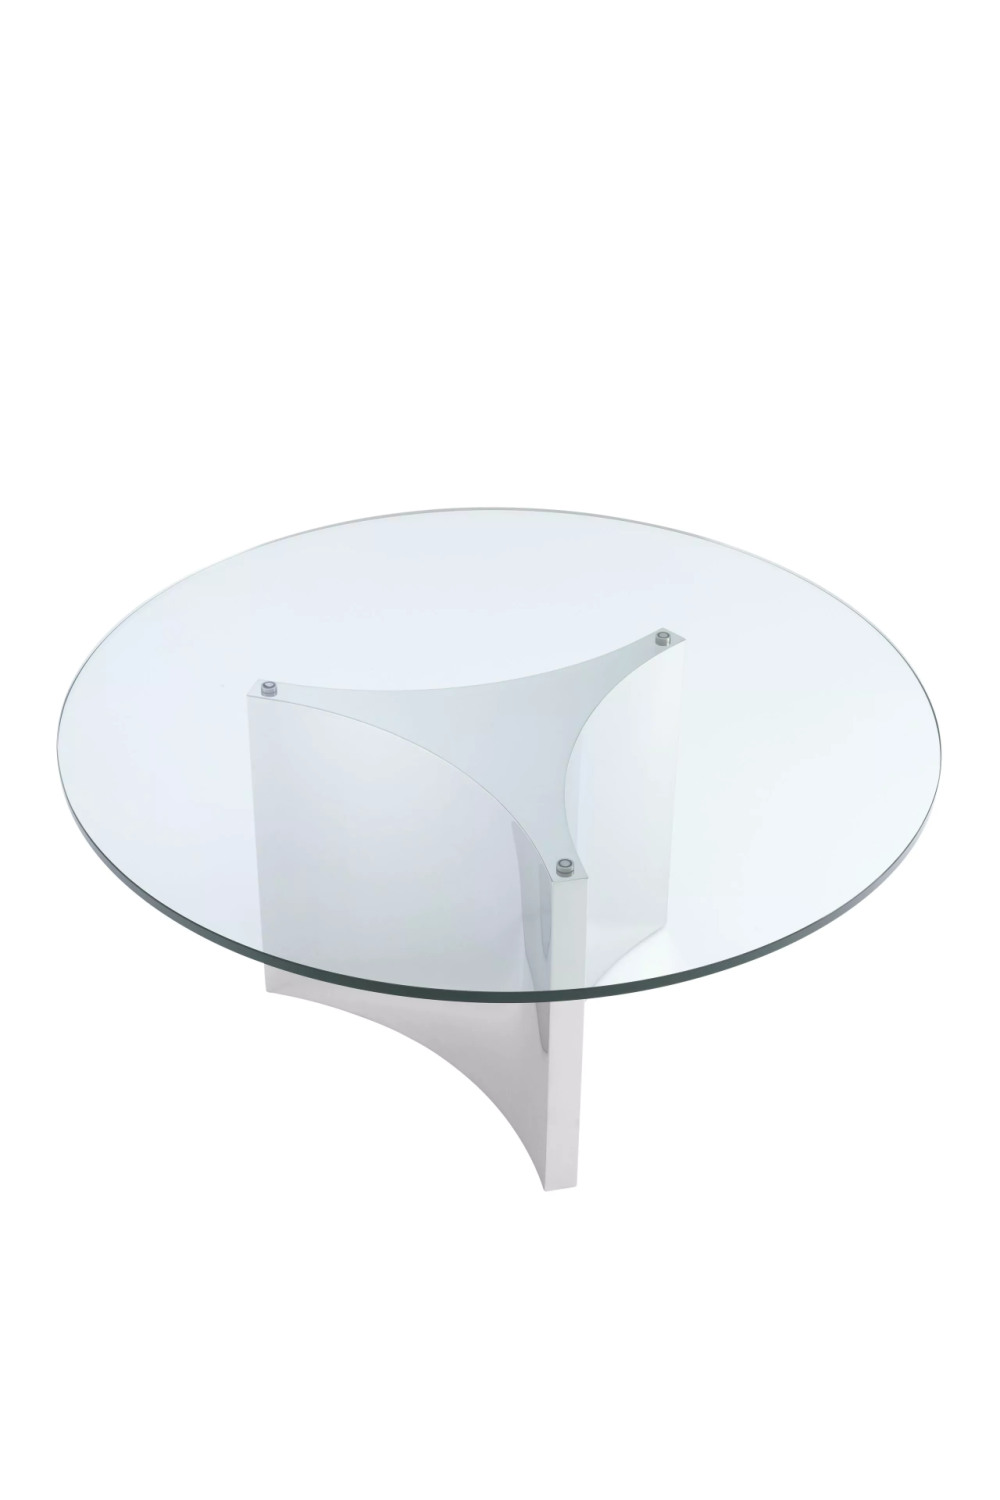 White Coffee Table with Ottoman | Eichholtz Modus | Oroa.com